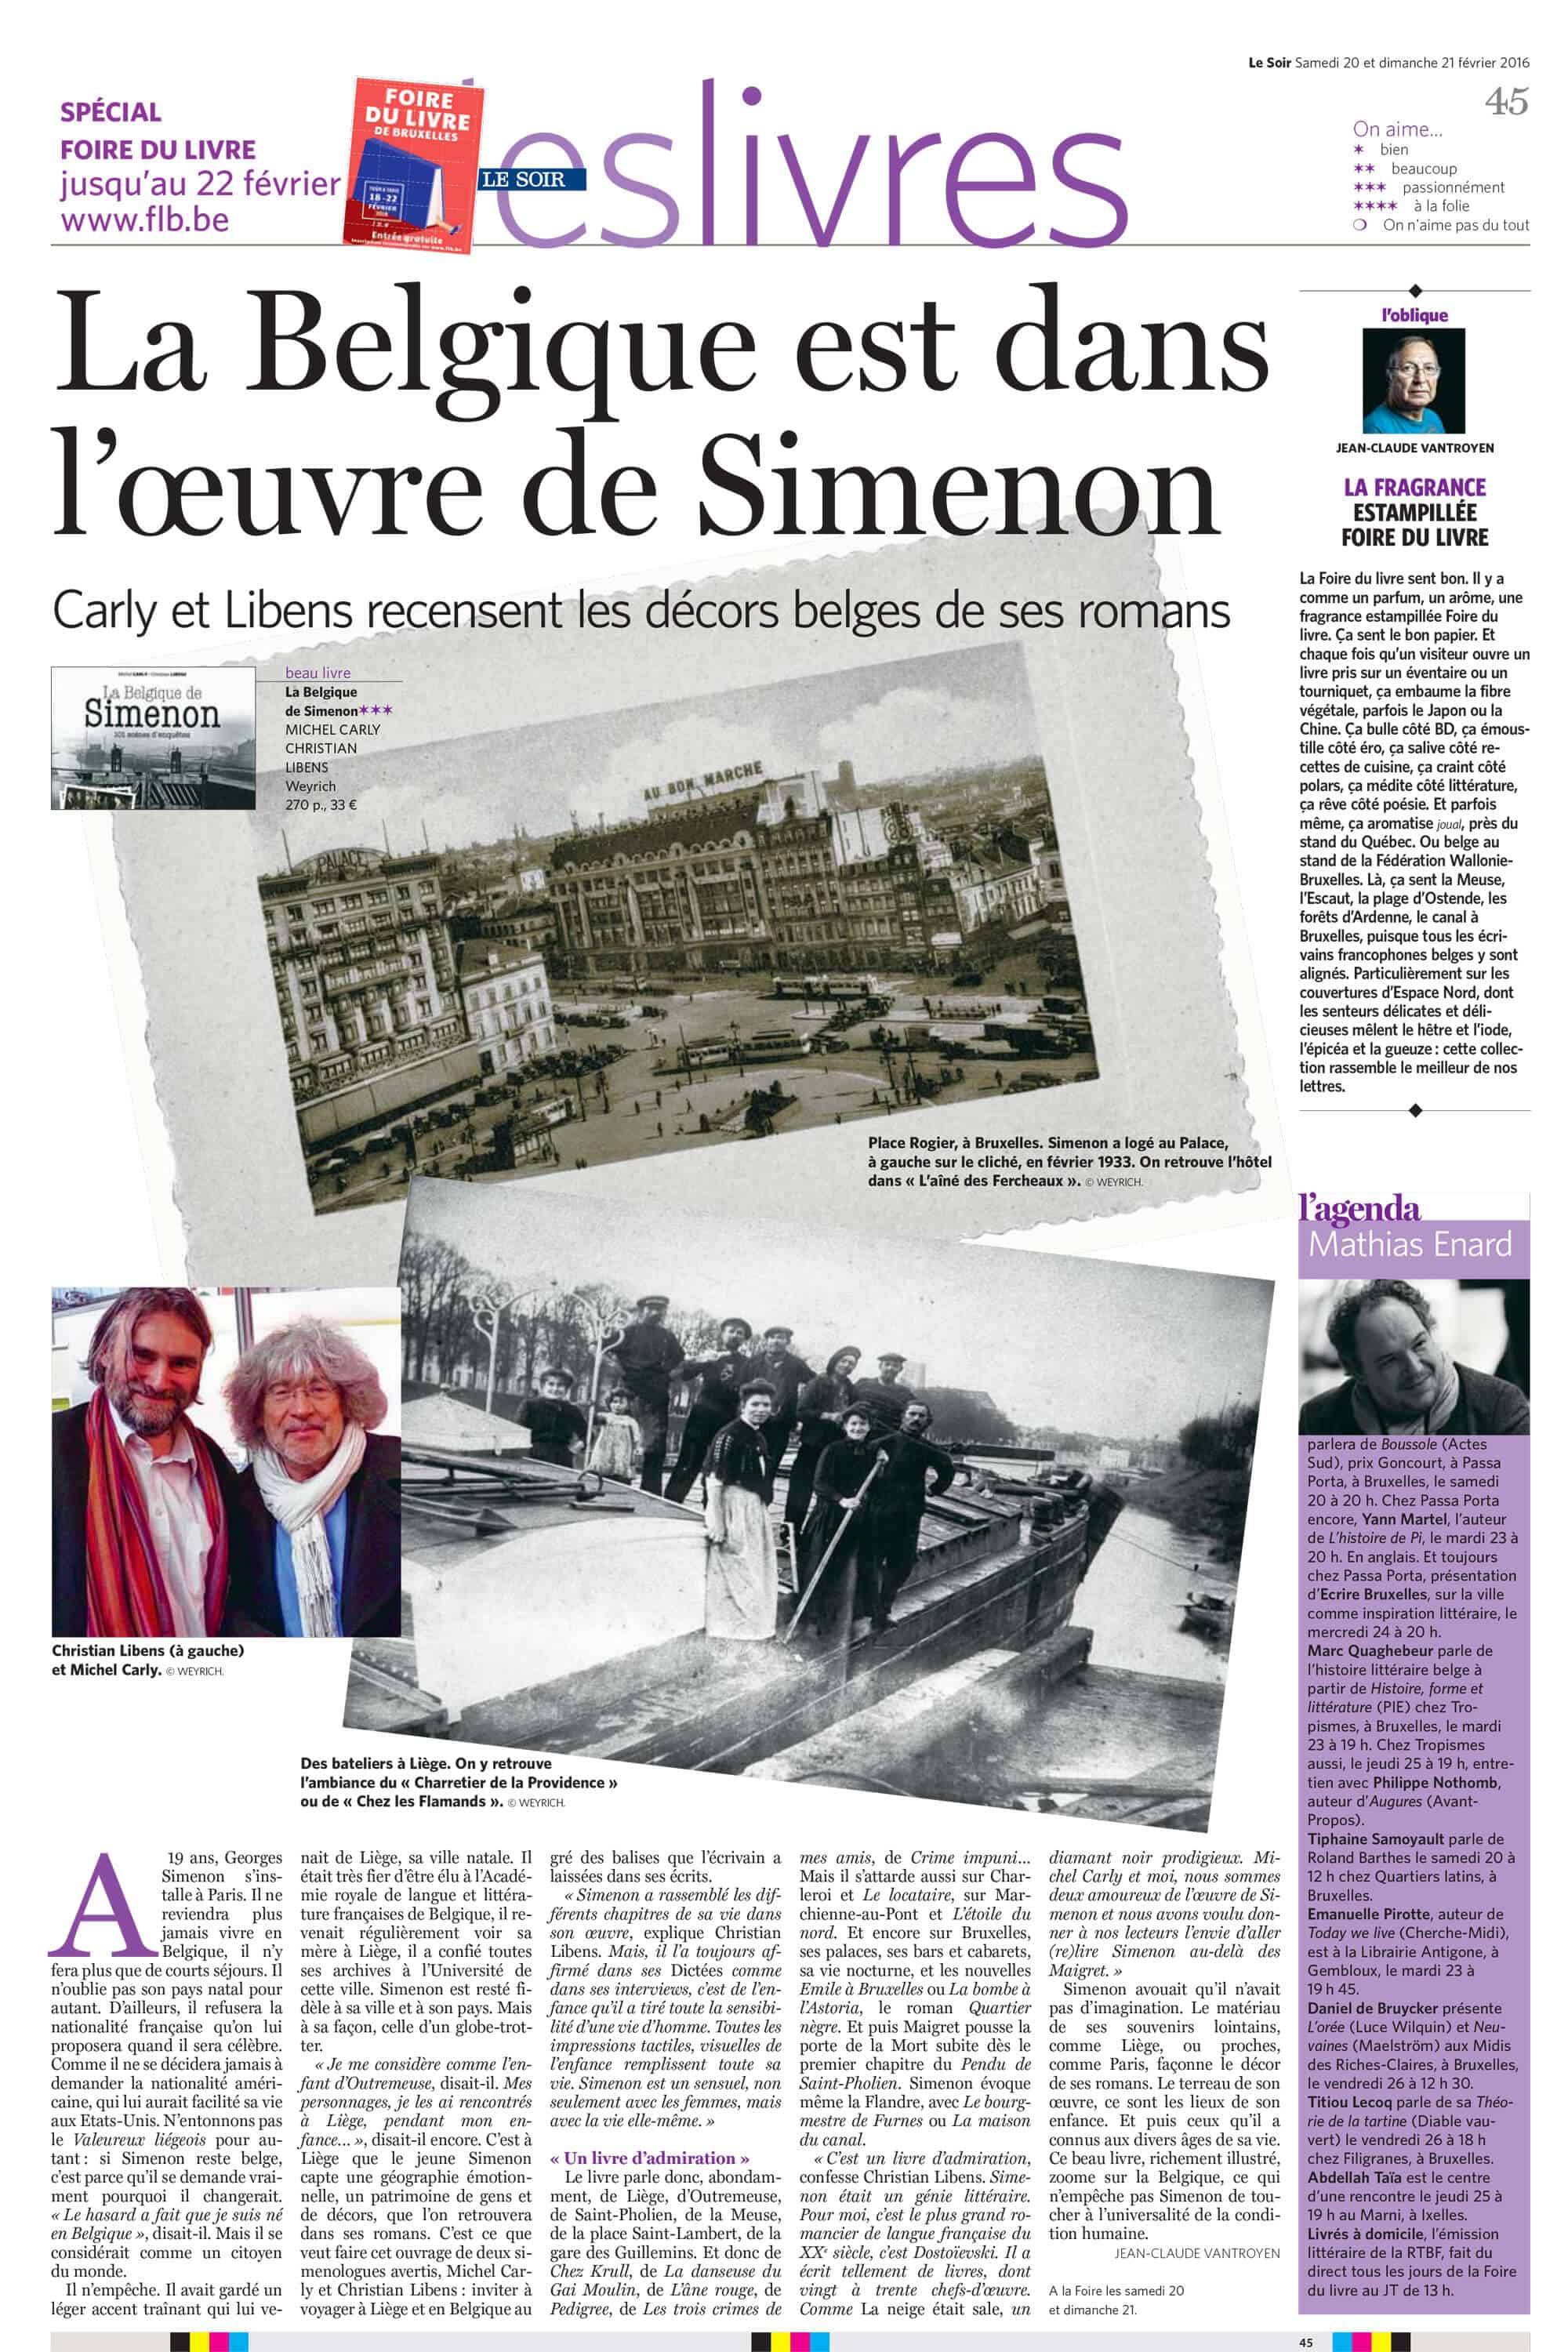 La Belgique est dans l'oeuvre de Simenon - Le Soir